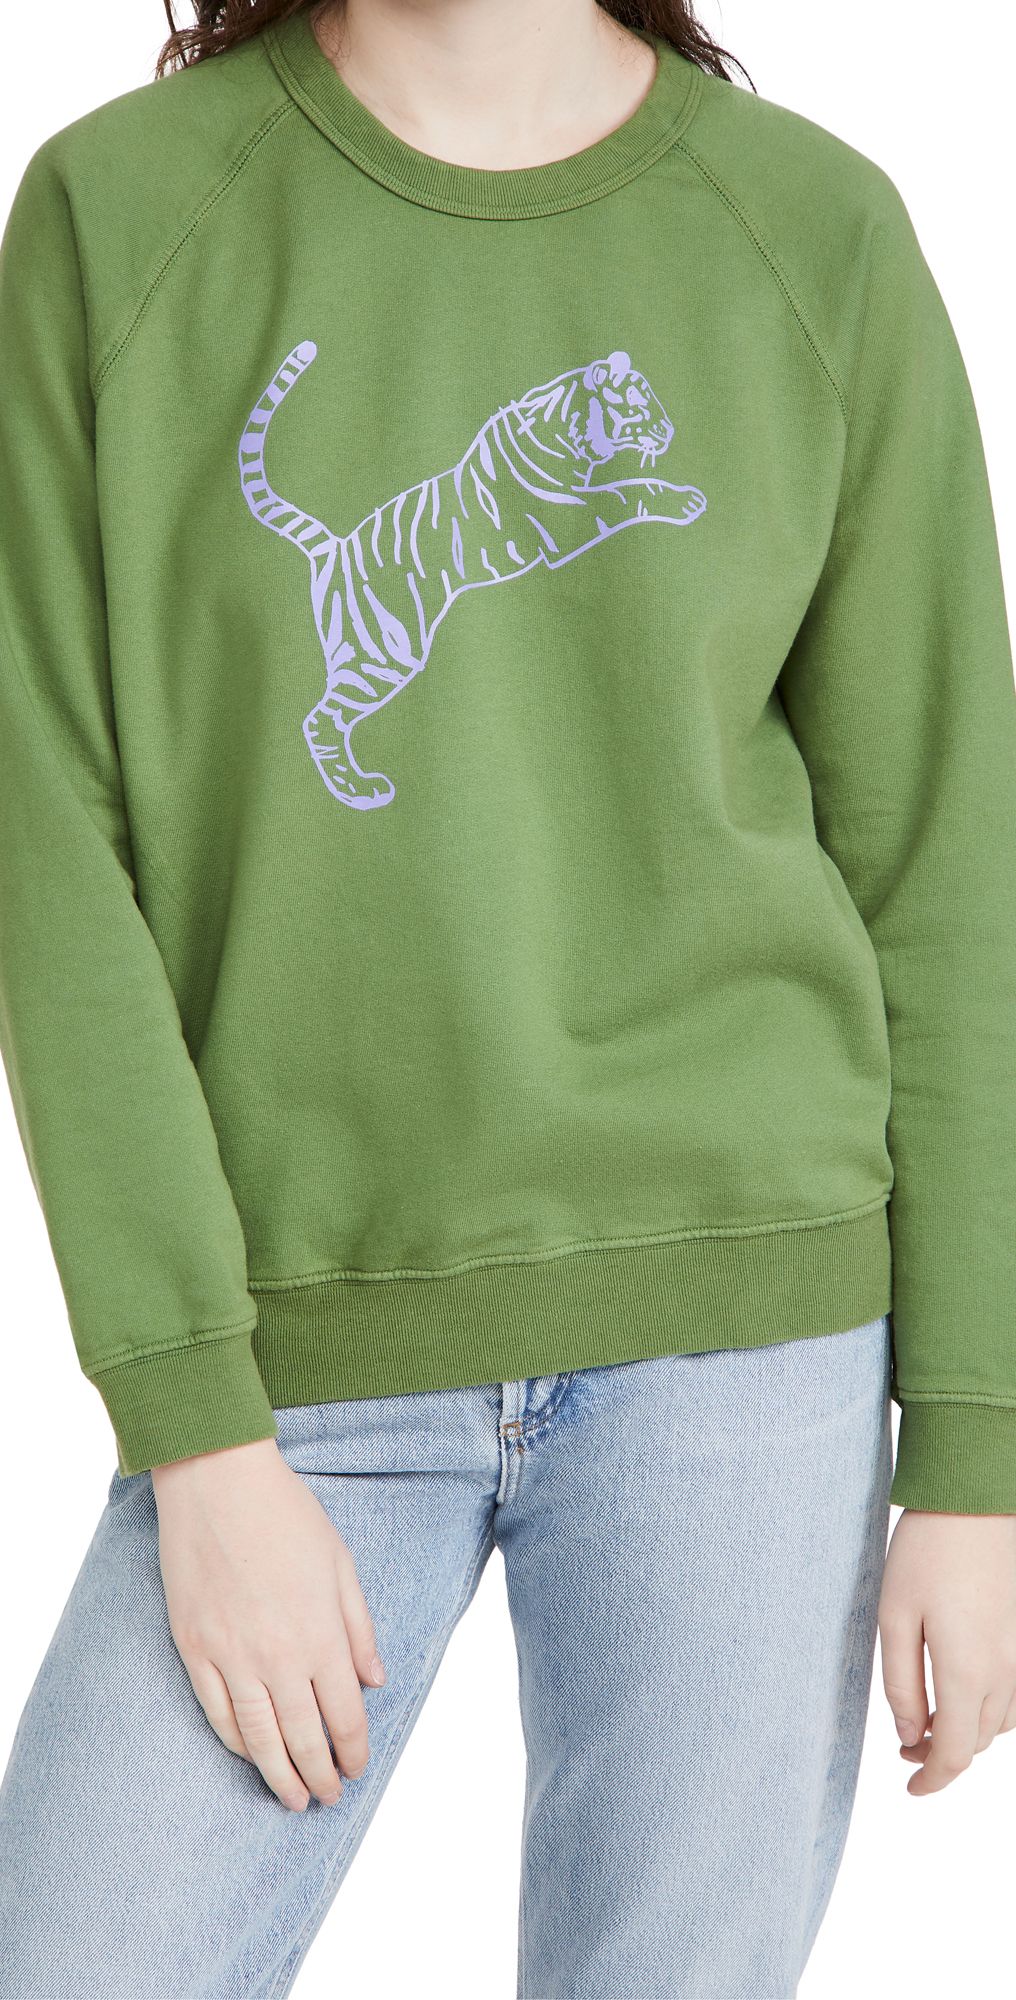 Clare V. Tiger Sweatshirt | Shopbop